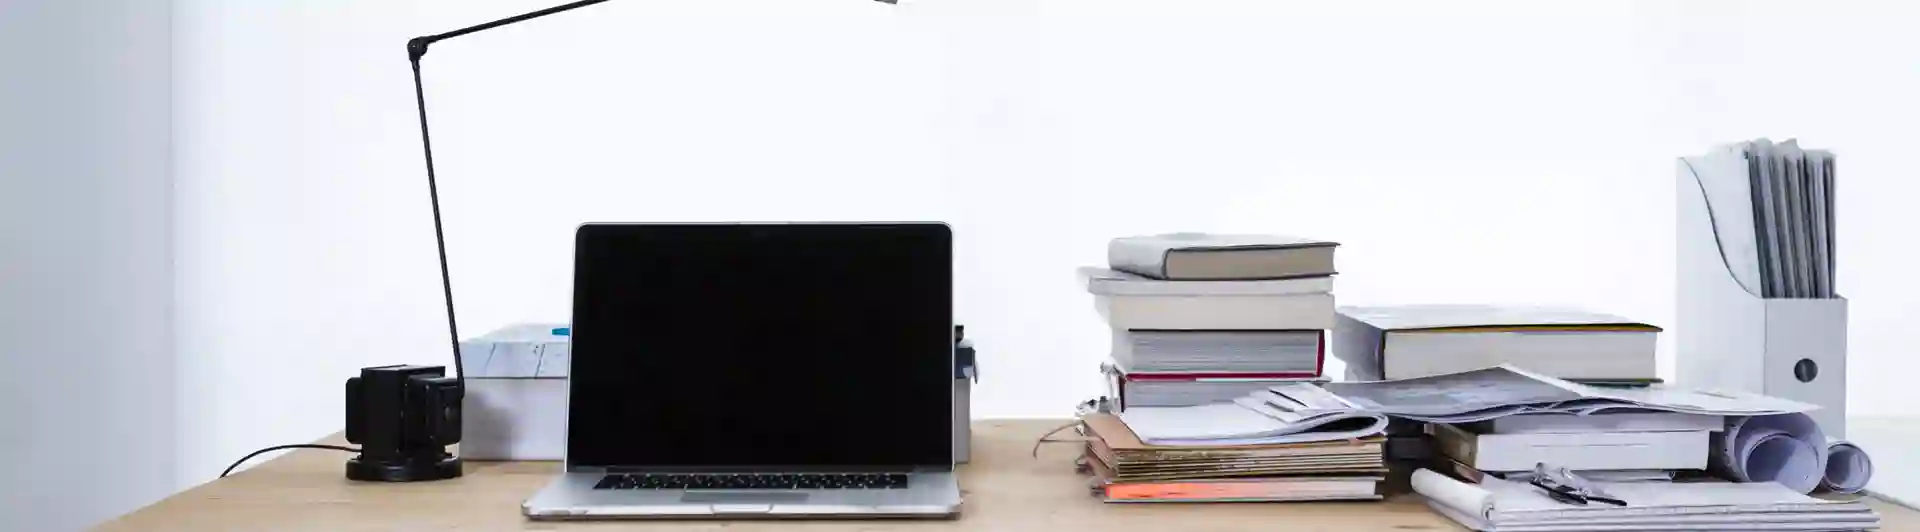 Bild som visar arbetsplats med bärbar dator, papper, dokument och böcker.